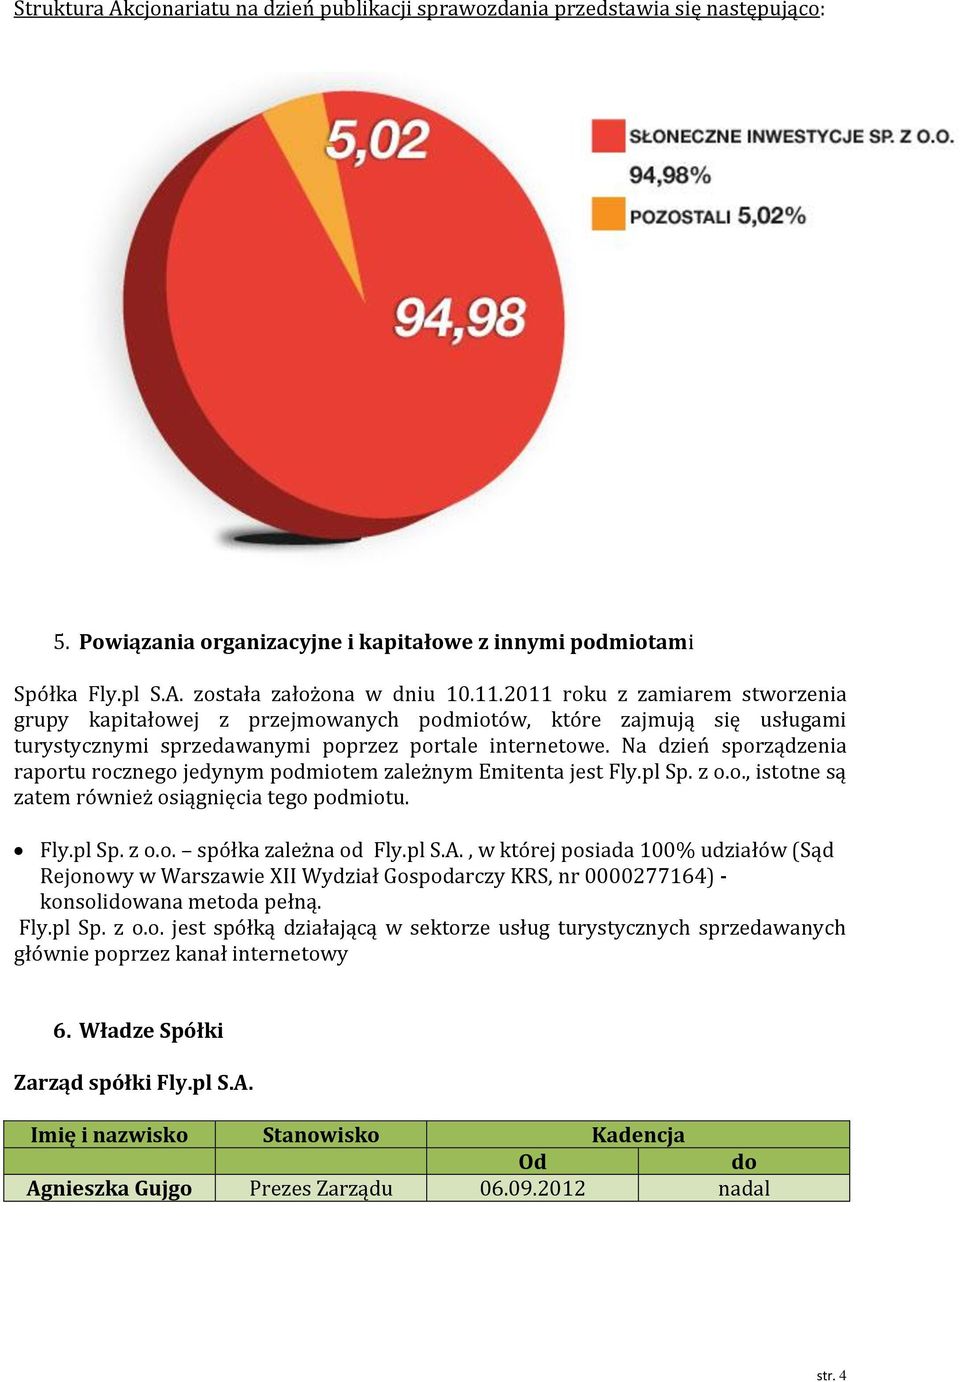 Na dzień sporządzenia raportu rocznego jedynym podmiotem zależnym Emitenta jest Fly.pl Sp. z o.o., istotne są zatem również osiągnięcia tego podmiotu. Fly.pl Sp. z o.o. spółka zależna od Fly.pl S.A.